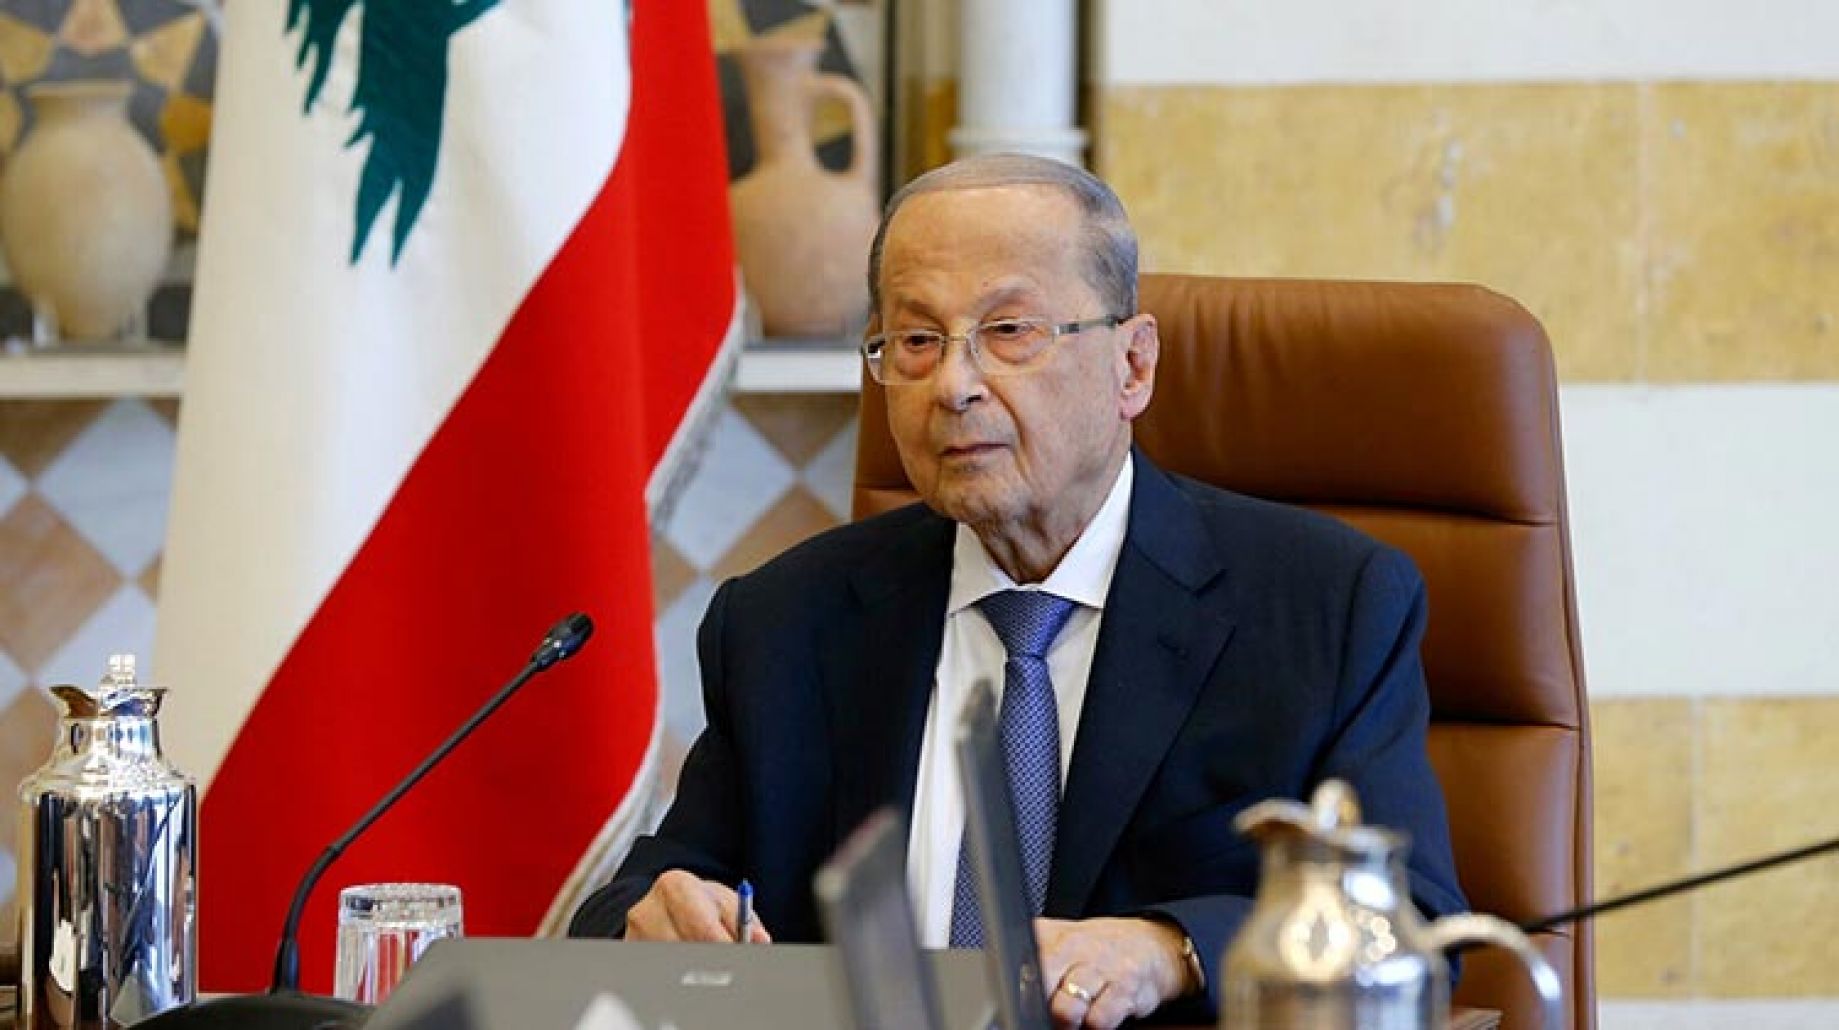 موقع بيروت 24 تنبأ بمضمون كلمة الرئيس عون قبل إعلانها